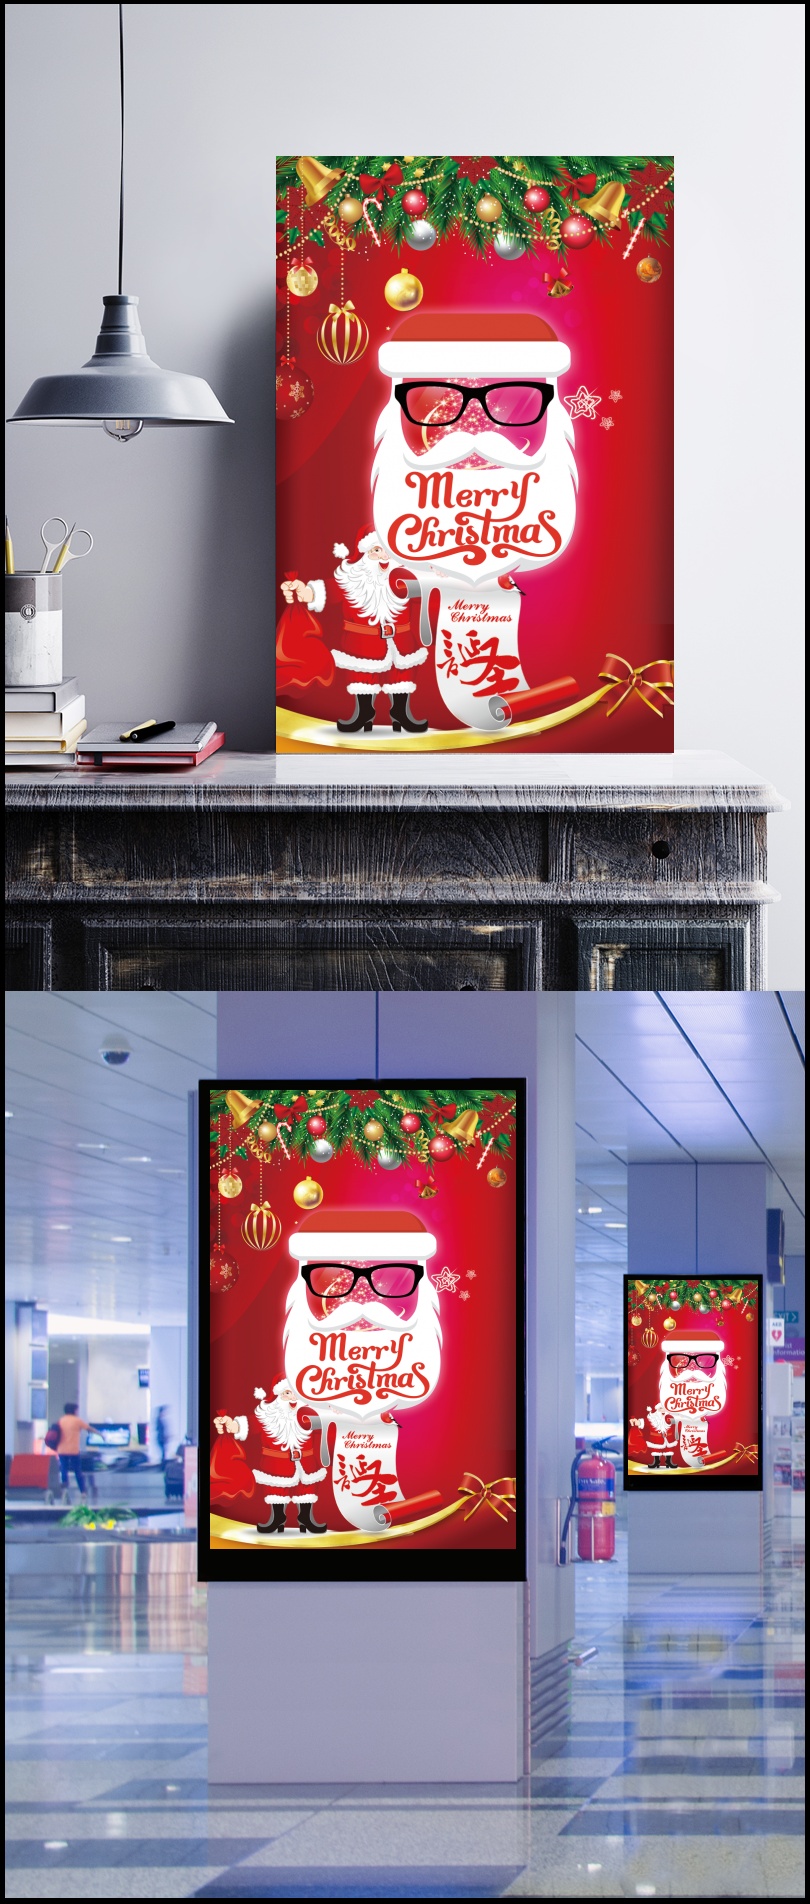 红色简约创意圣诞节圣诞快乐促销宣传海报